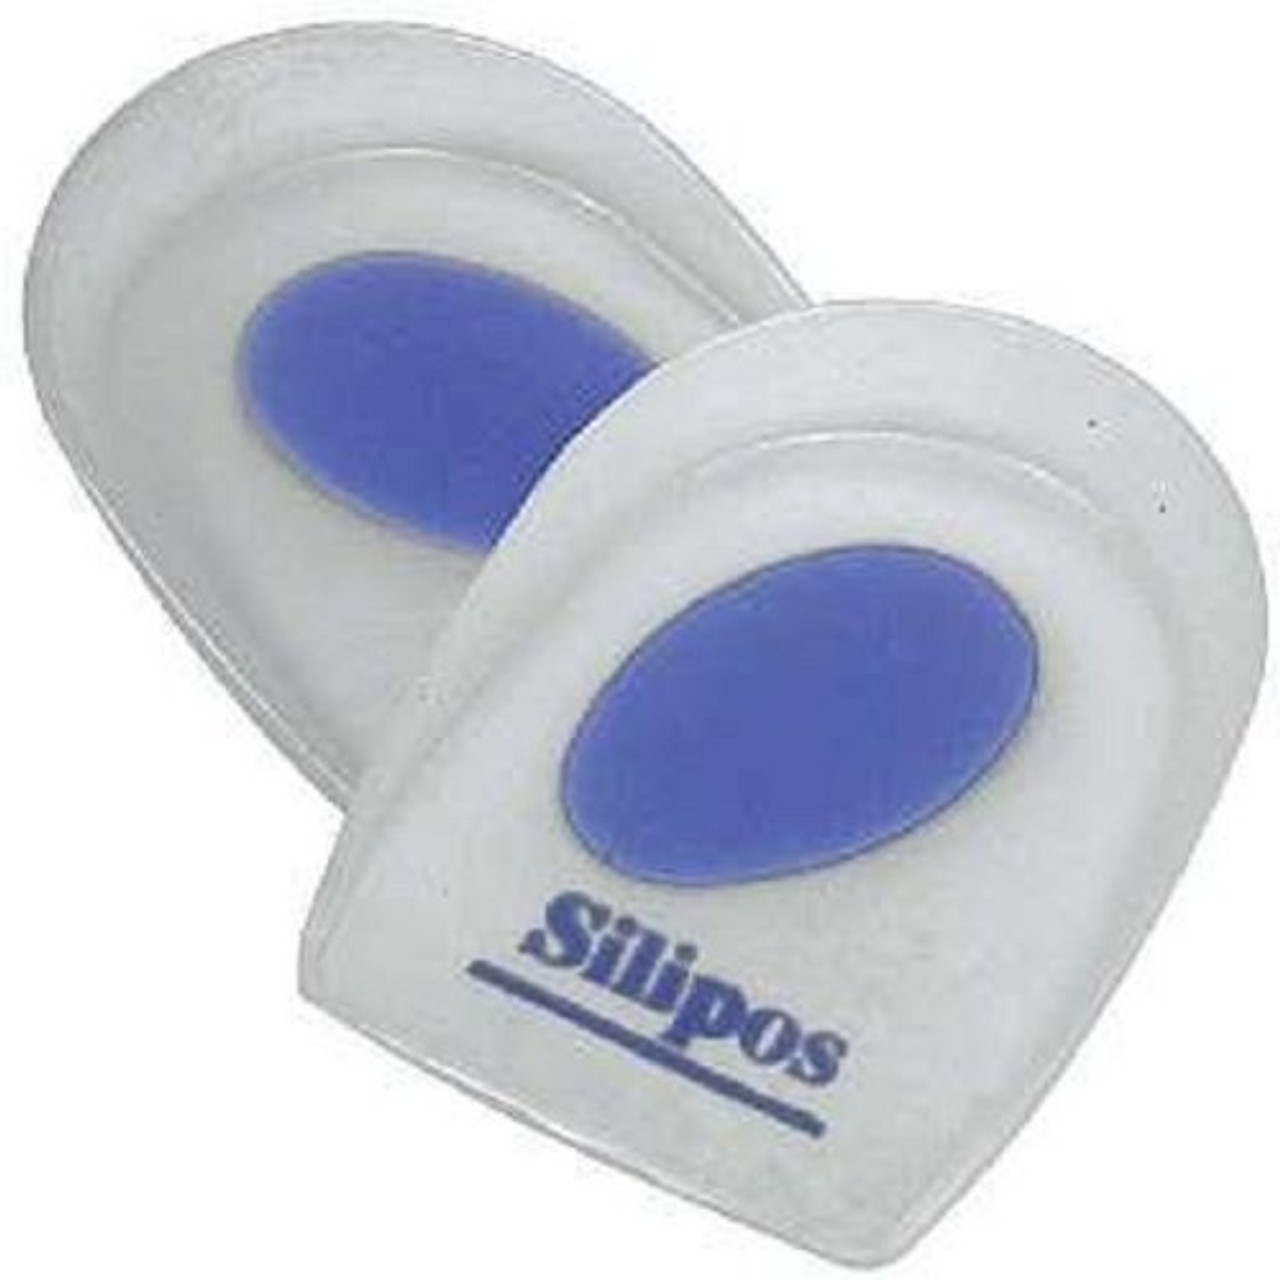 Silipos Wonderzorb Wonderspur Heel Cups Blue - Xl - M 11/14 -  MedicalSupplyMi